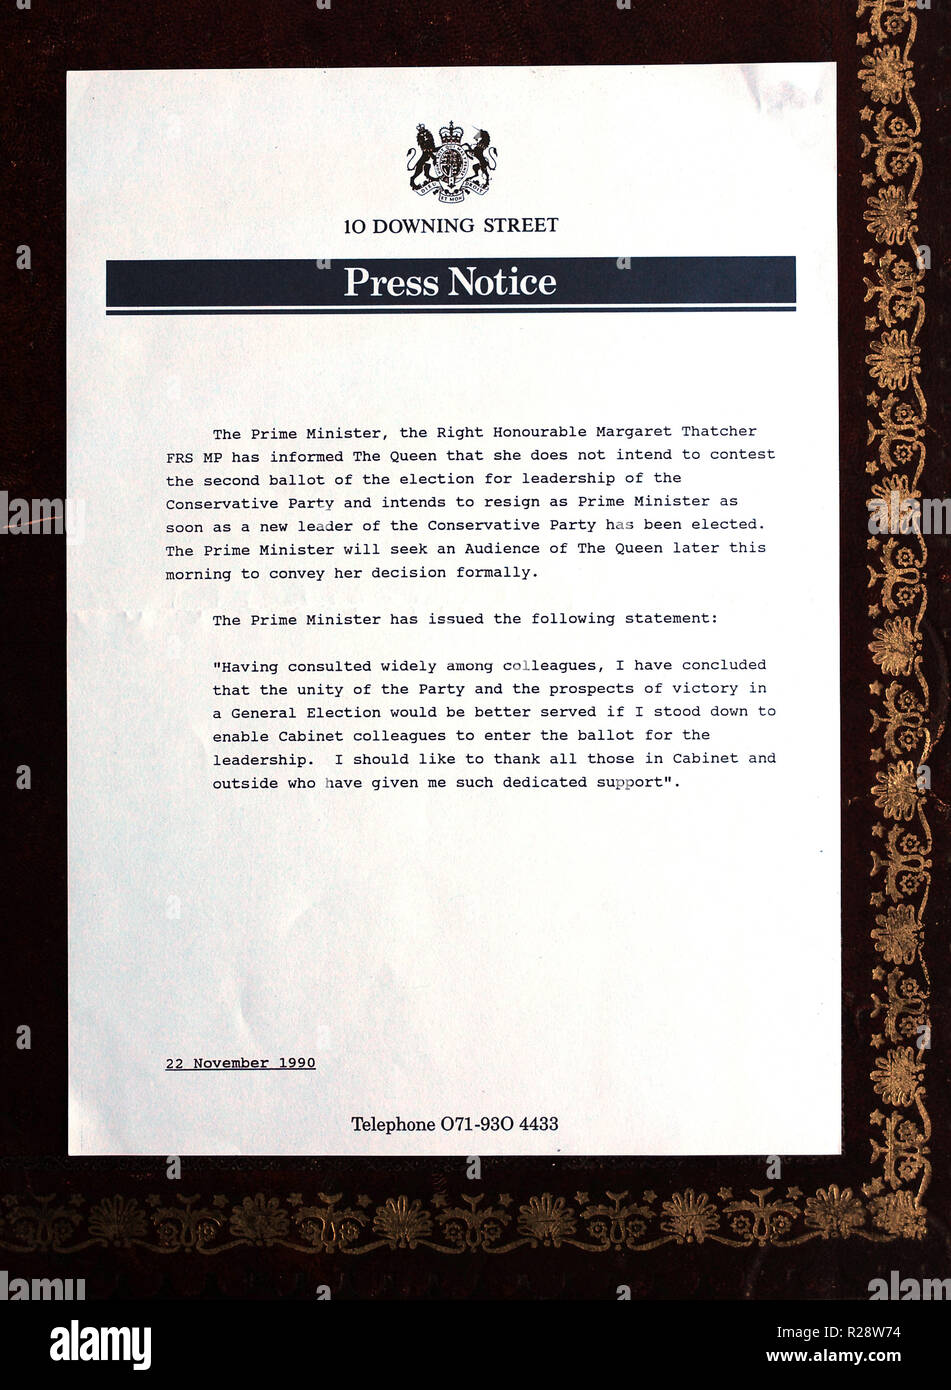 Original Pressemitteilungen im Zusammenhang mit dem Rücktritt der, dann, Herr Ministerpräsident, Margaret Thatcher, sind im Studio Fotos in London gesehen Stockfoto